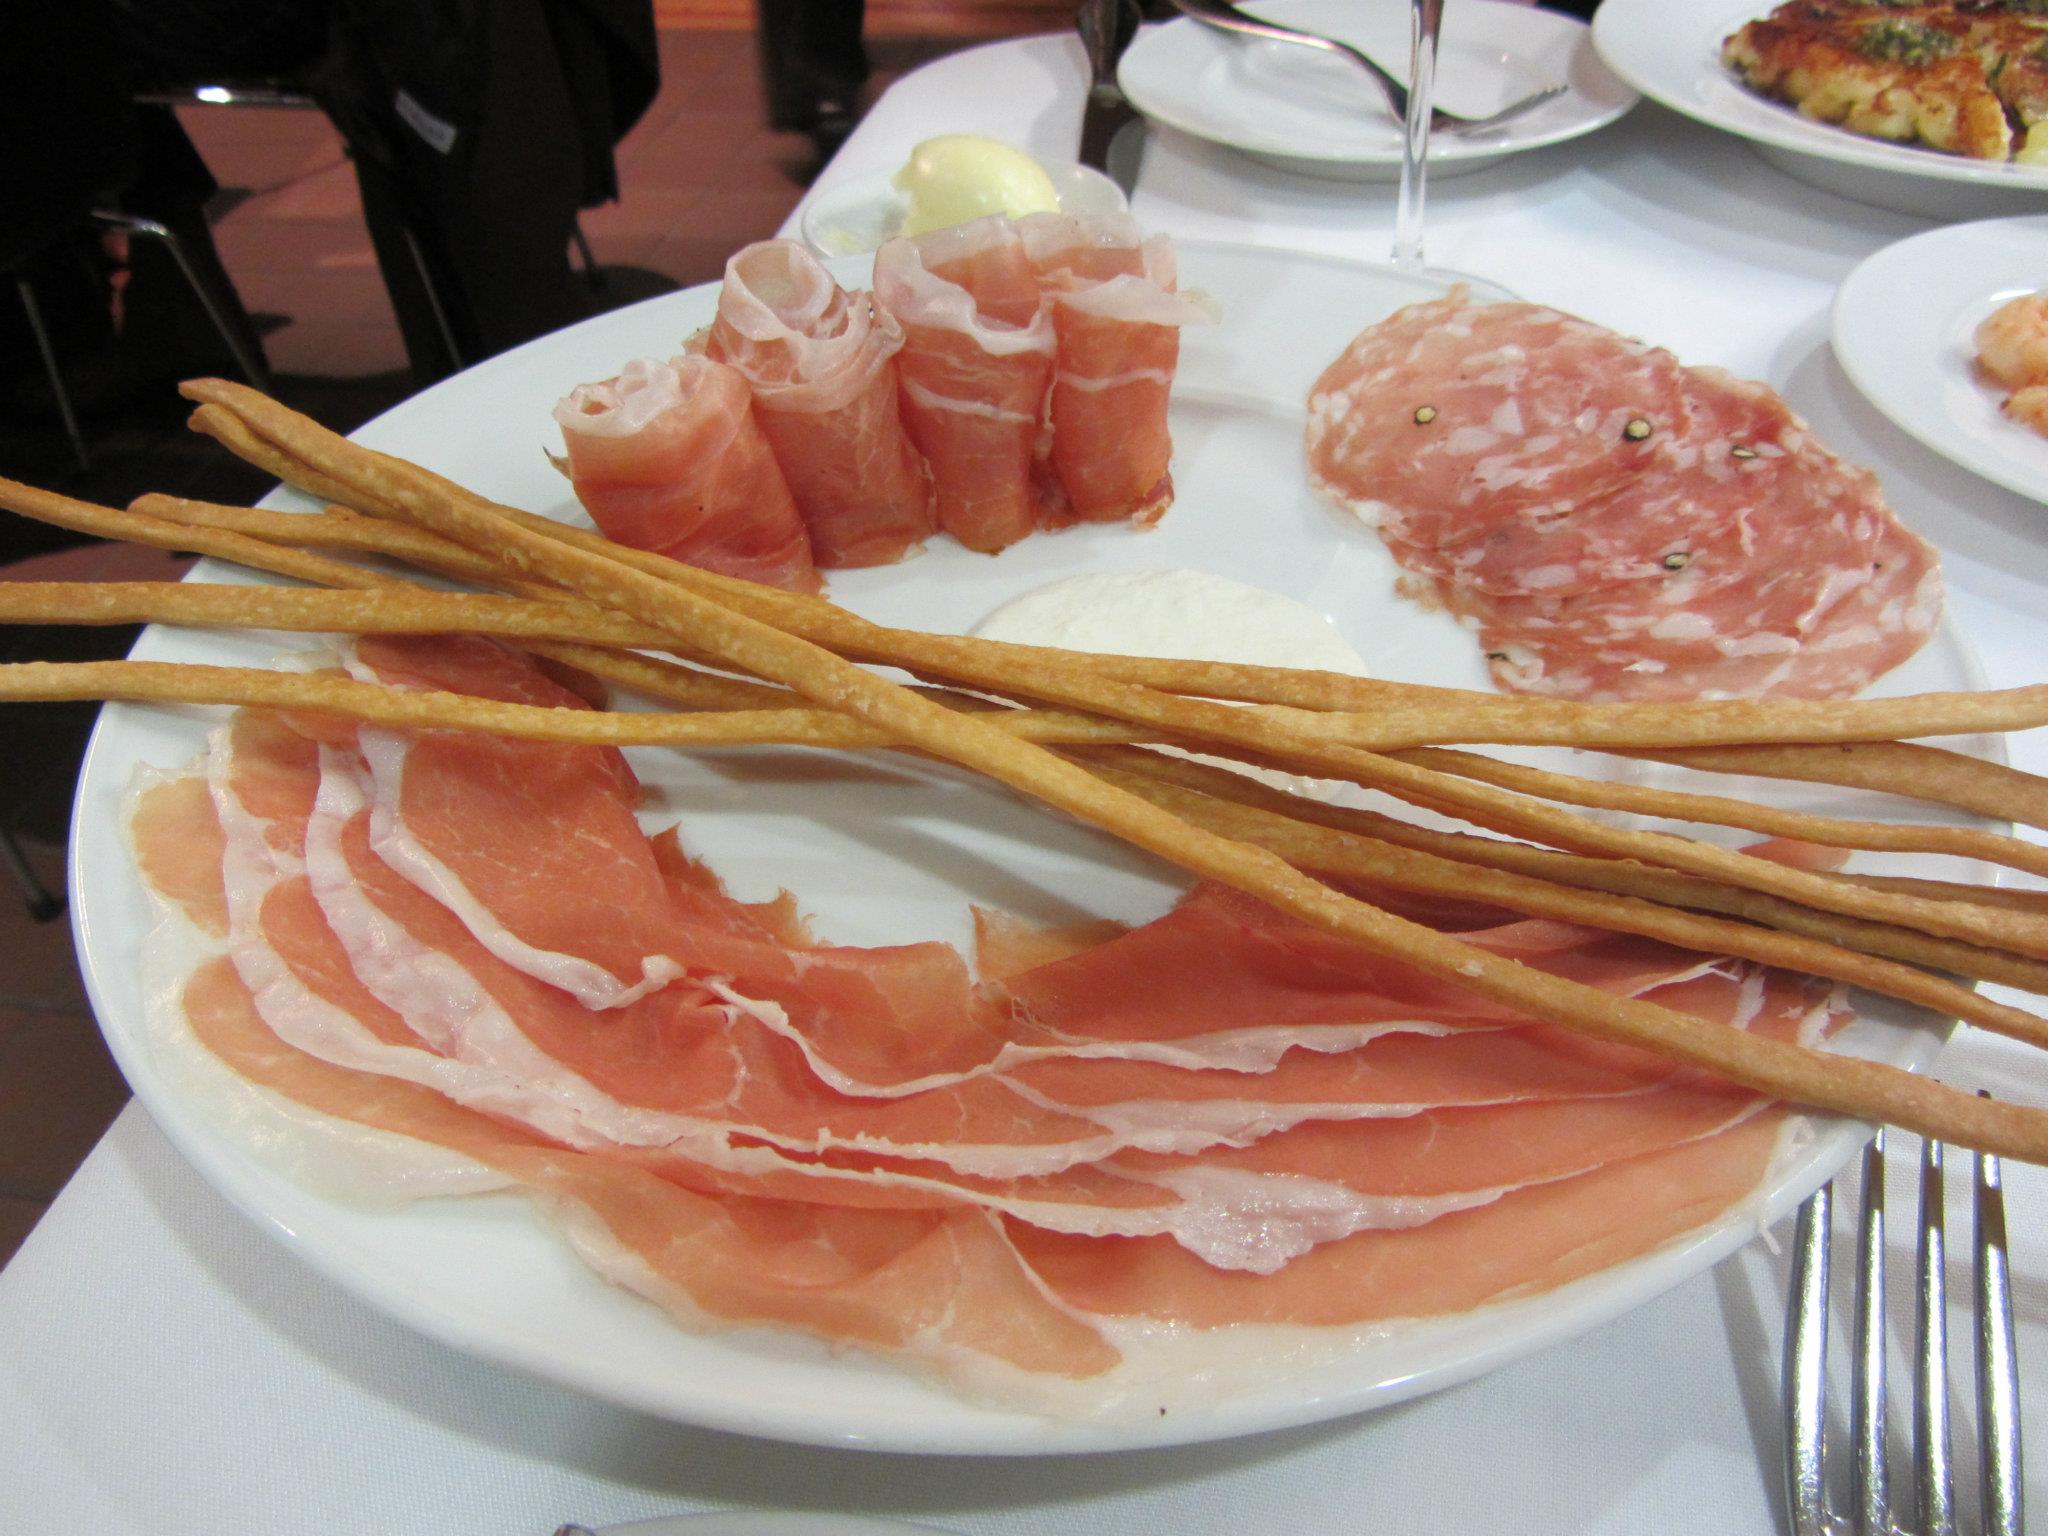 Salumi - Prosciutto di San Daniele riserva, speck Alto Adige, Fra'Mani salame toscano, rafano (horseradish creme fraiche), and grissini. 